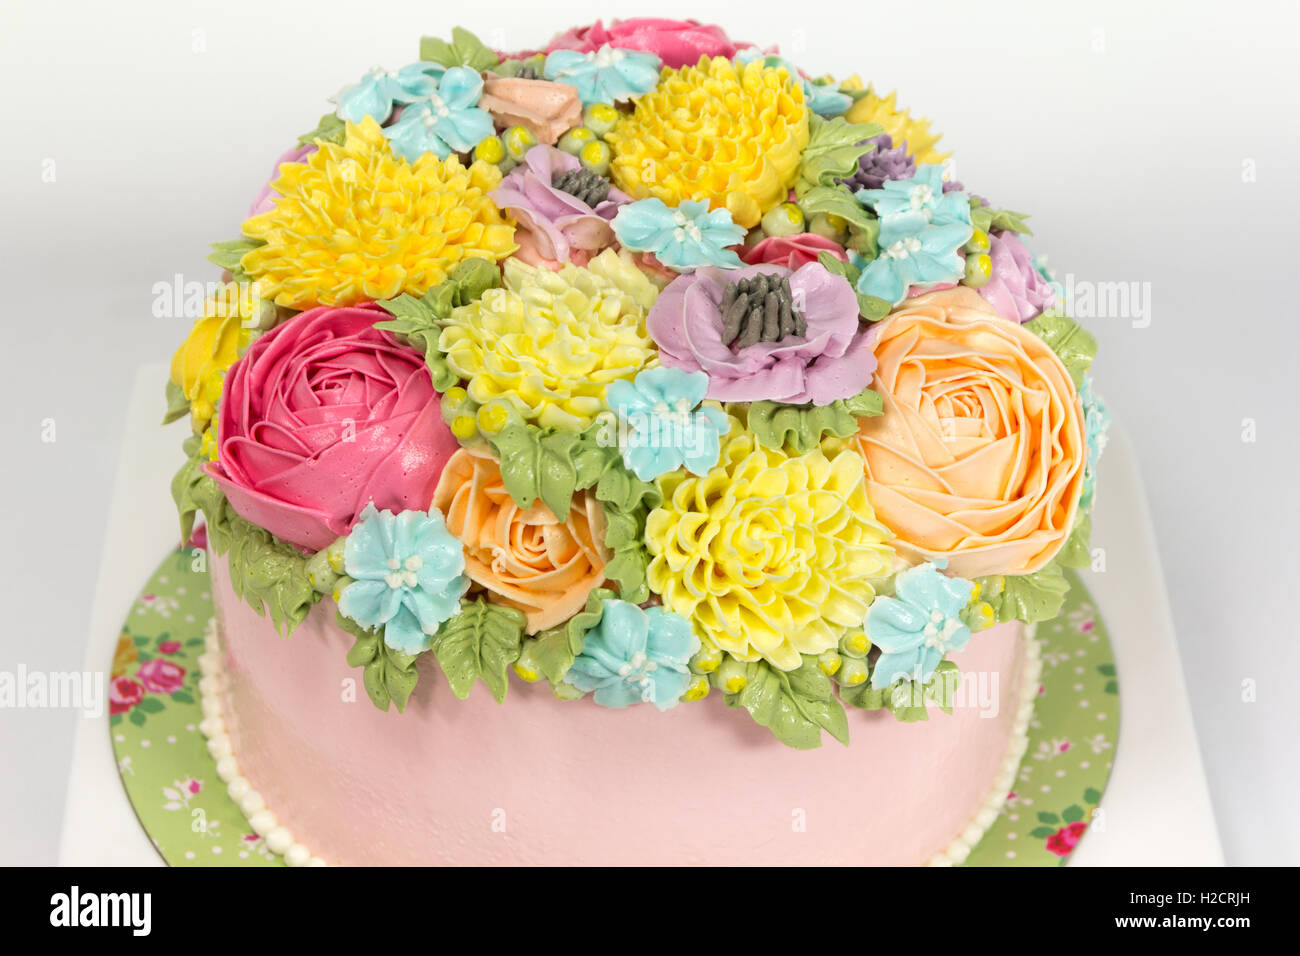 Beau gâteau décoré de fleurs Banque D'Images